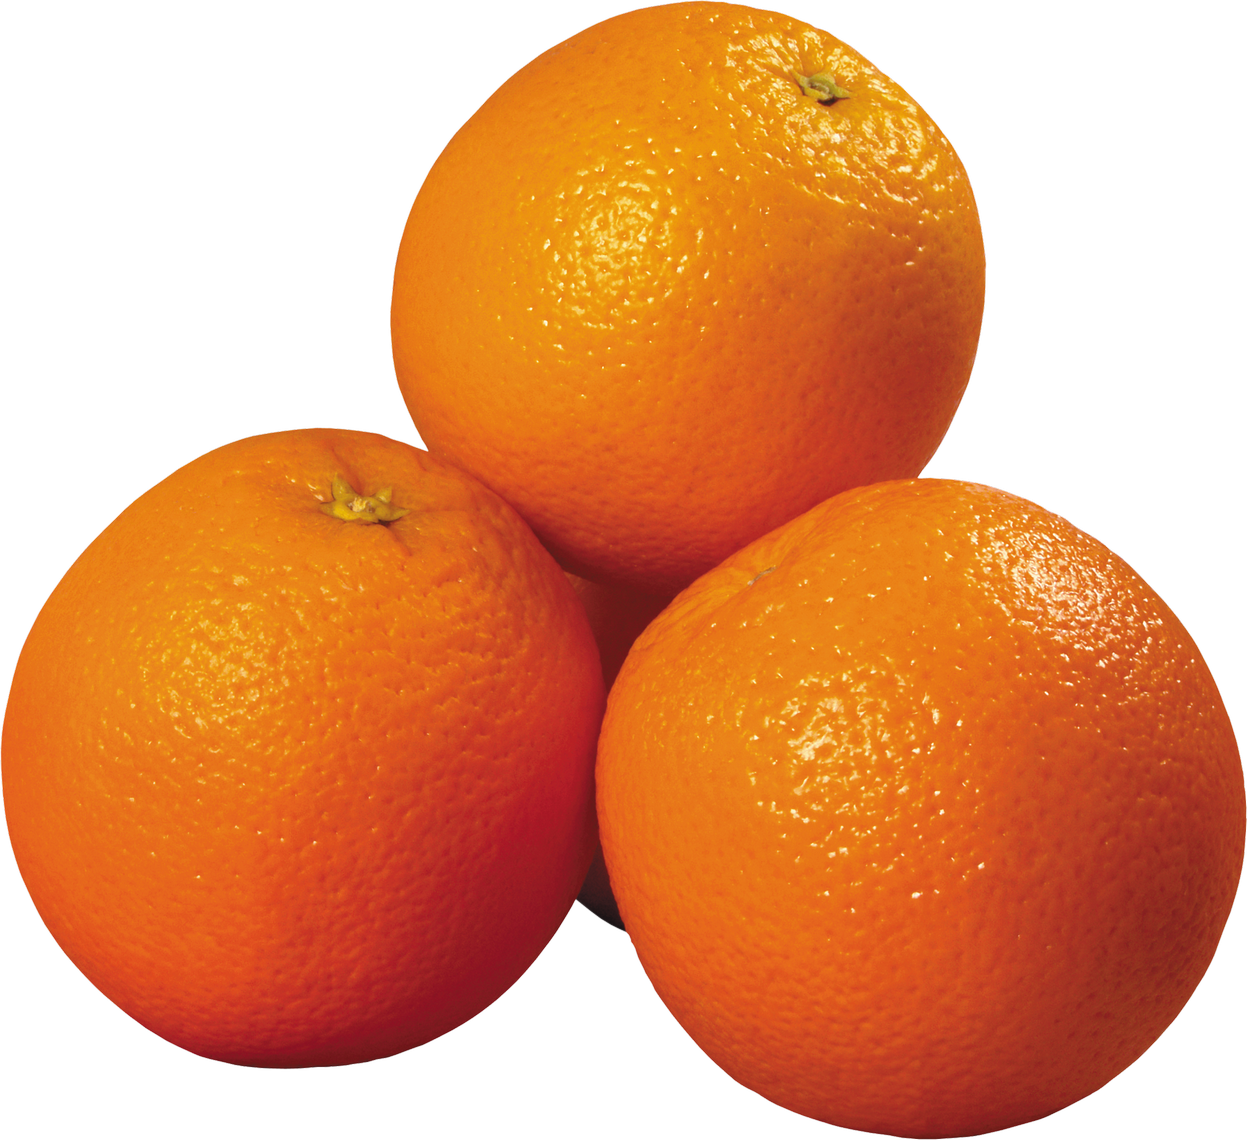 Purepng.com Orangeorangefruitbitter Orangeorangs 1701527336276ebdxo 